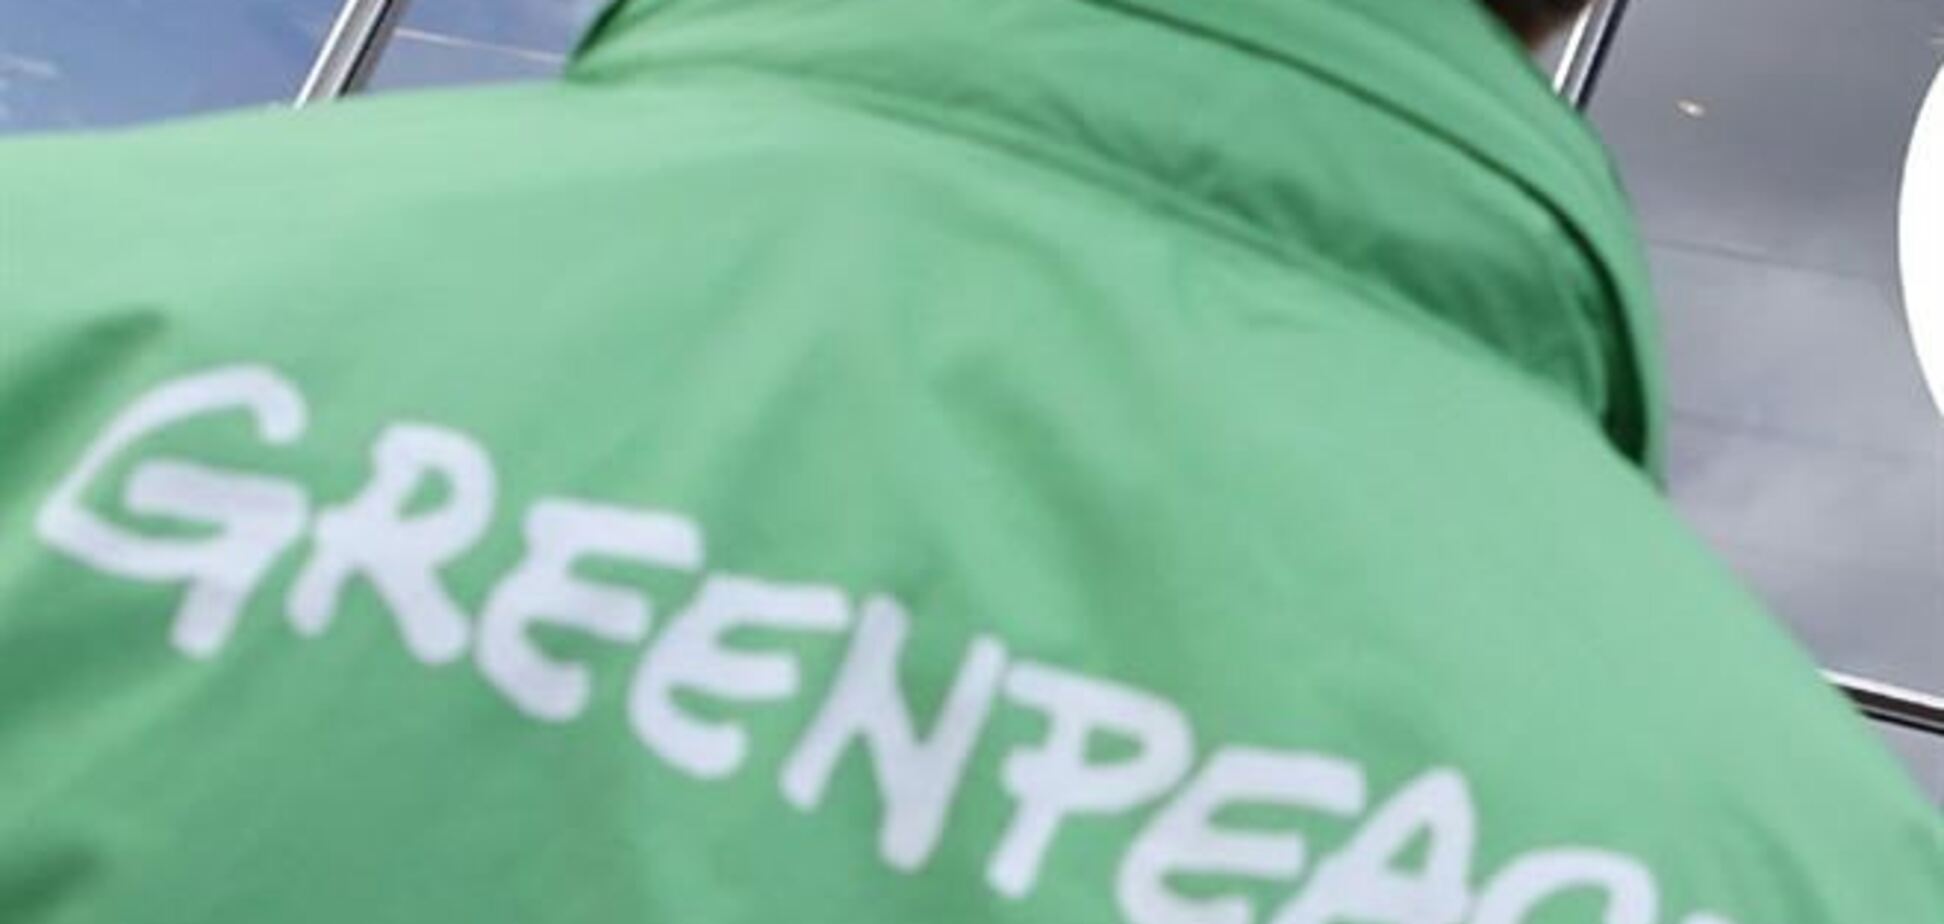 Активисты Greenpeace оштрафованы за попытку проникновения на АЭС Швеции